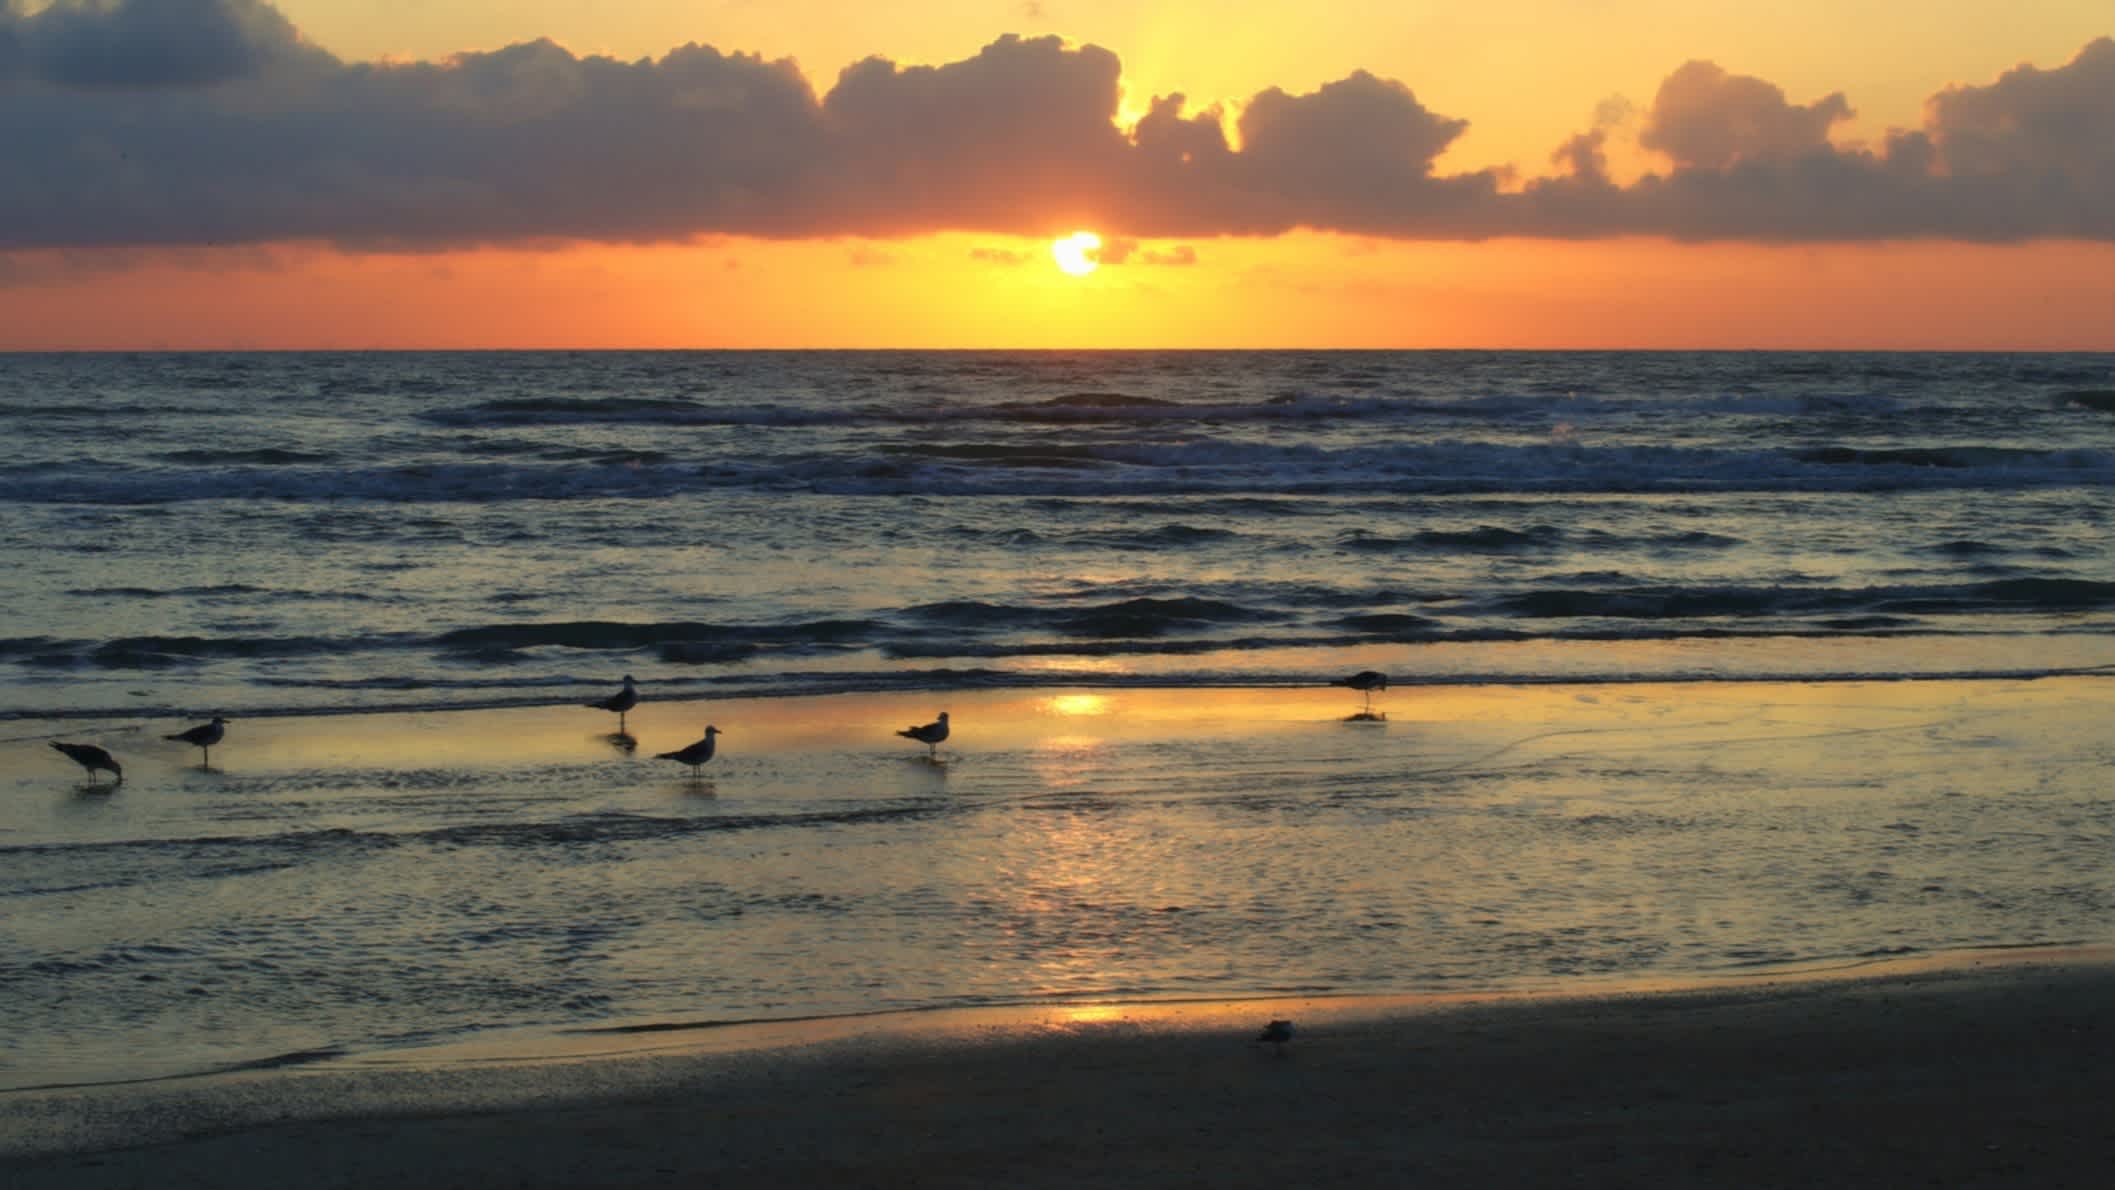  Der Strand Jamaica Beach, Galveston County, Texas, USA bei Sonnenuntergang mit Blick auf einige Vögel im Wasser.